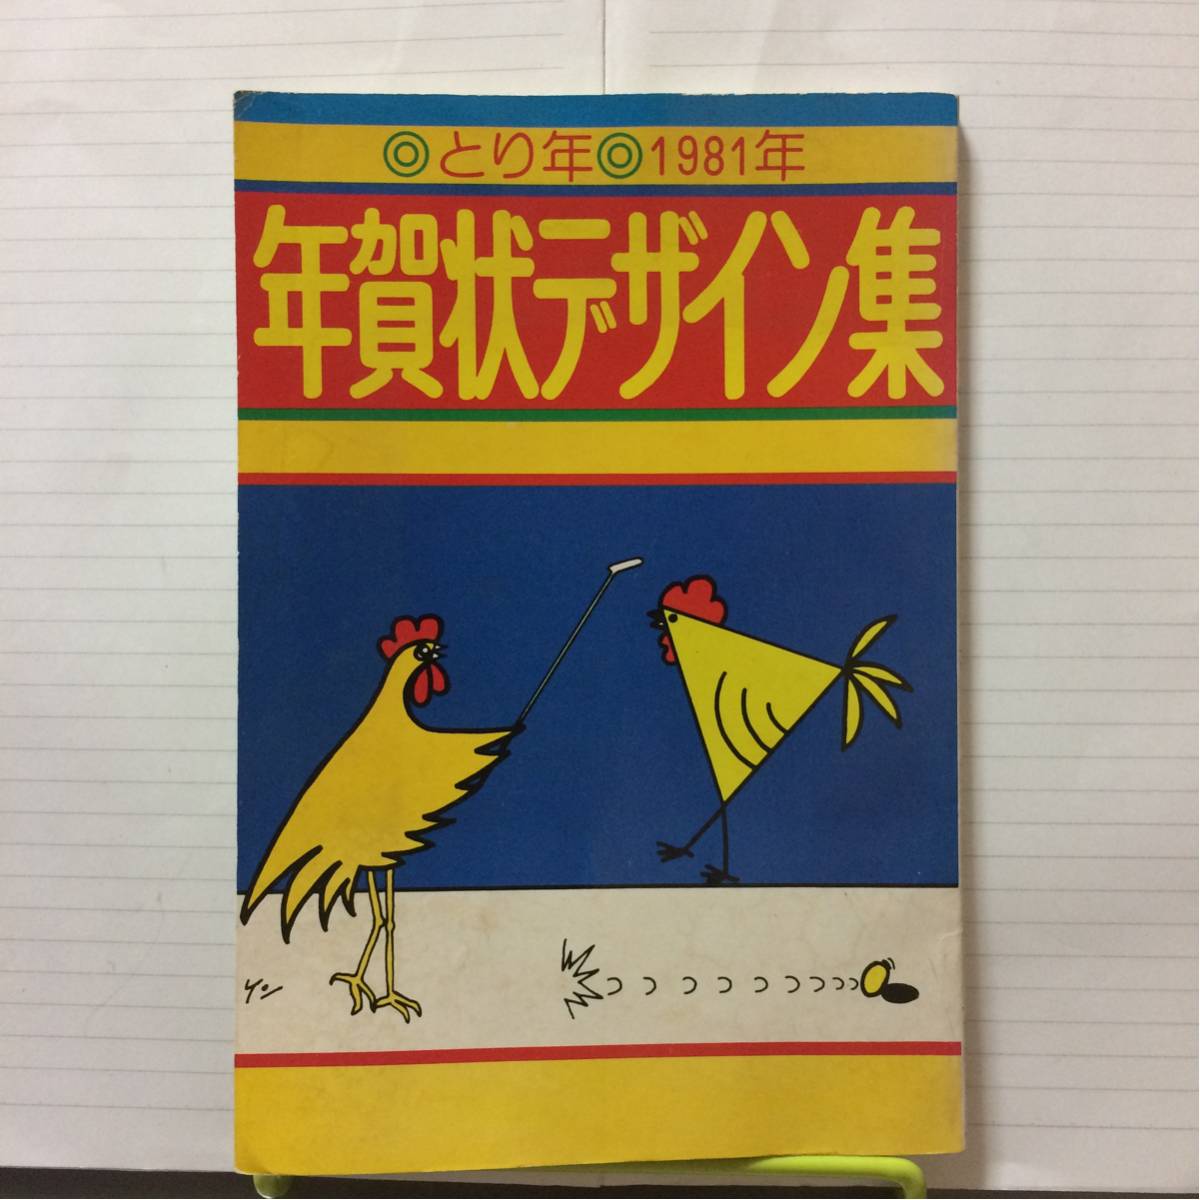 1981年 とり年 年賀状デザイン集 有紀書房 中村健一郎